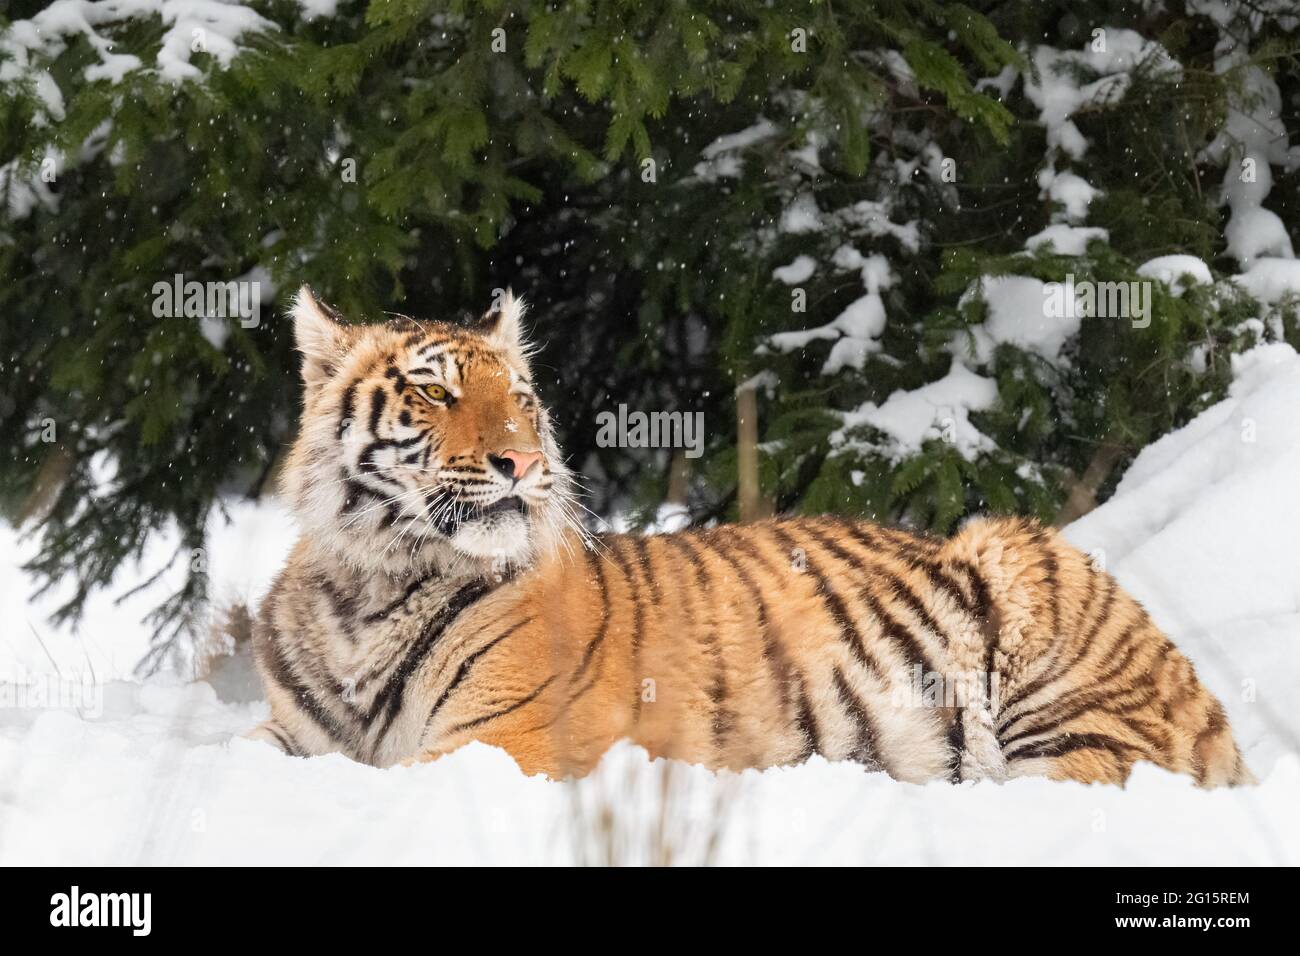 Le tigre d'Ussuri se trouve dans la neige près de la forêt. Banque D'Images